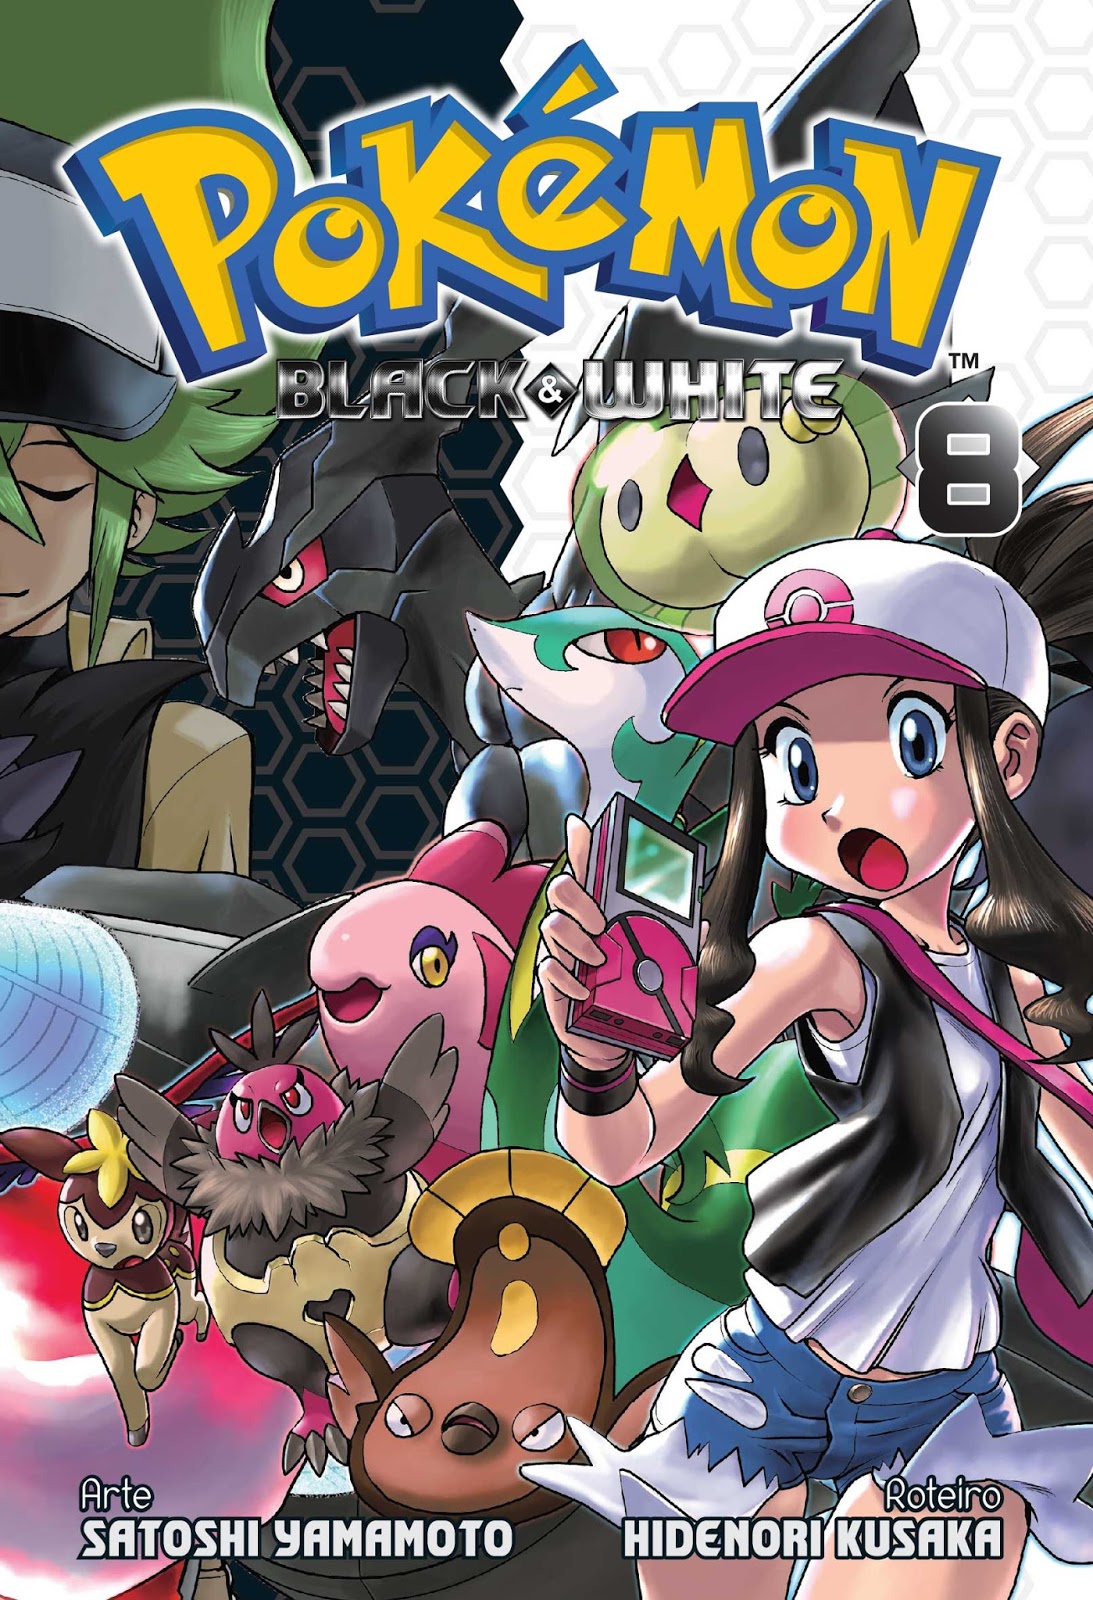 Pokémon 04: Campeões da Liga Johto – Dublado Todos os Episódios